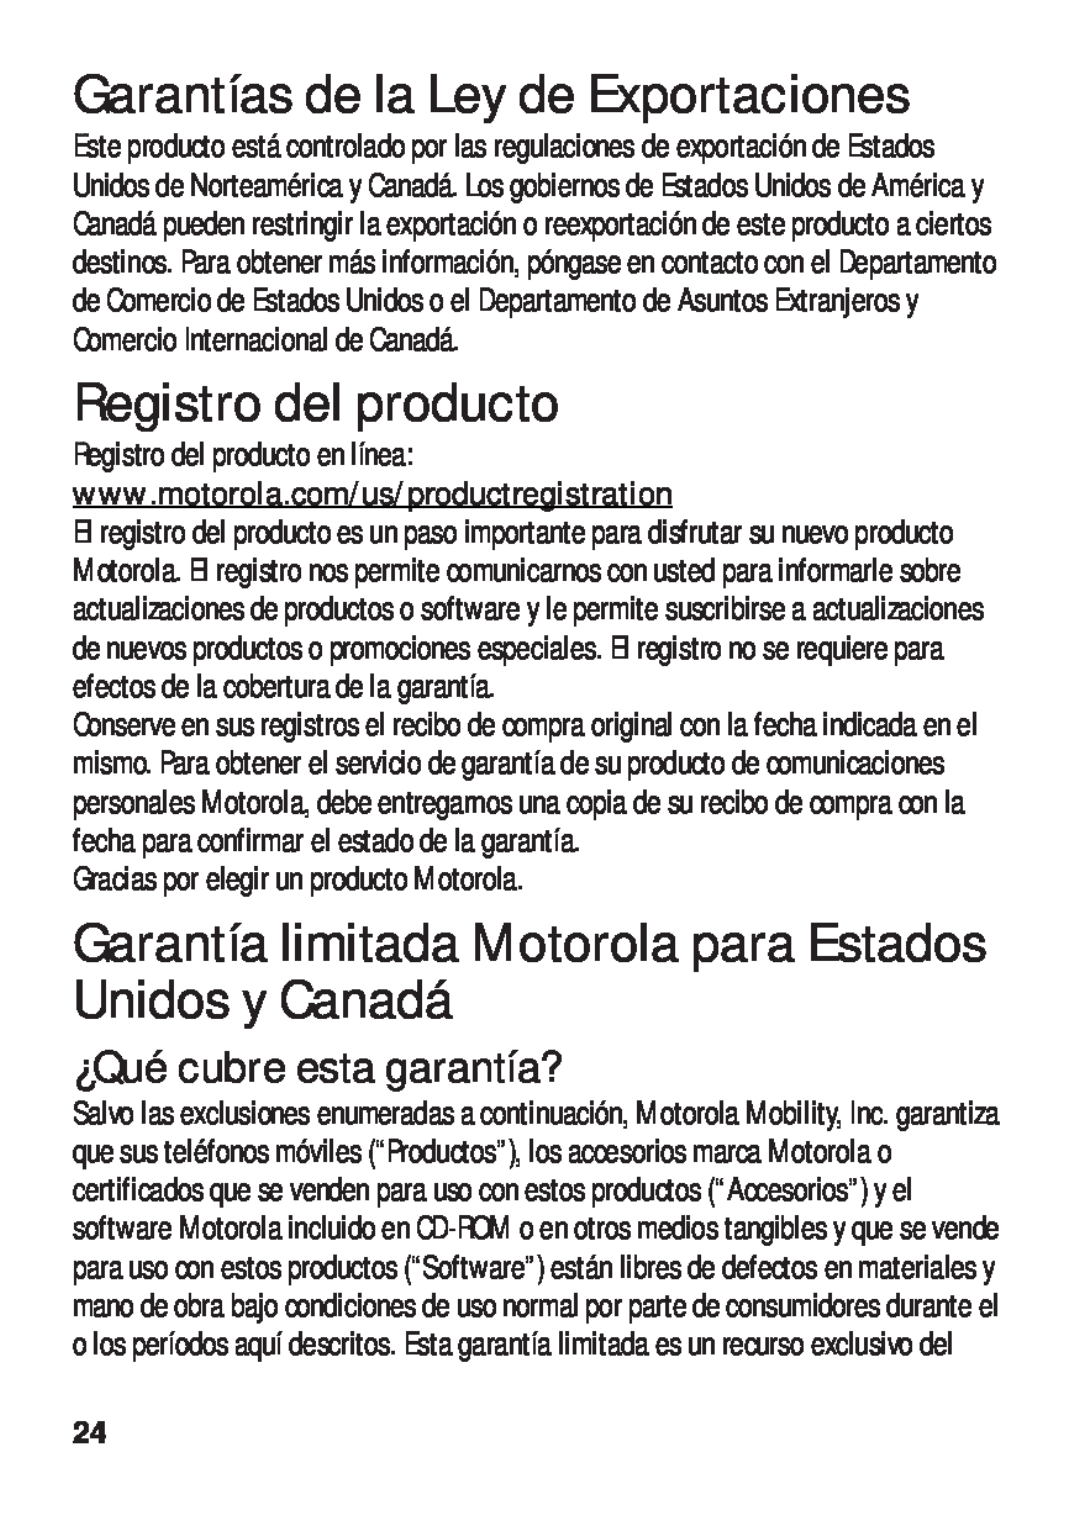 Motorola TX500 manual Garantías de la Ley de Exportaciones, Registro del producto, ¿Qué cubre esta garantía? 